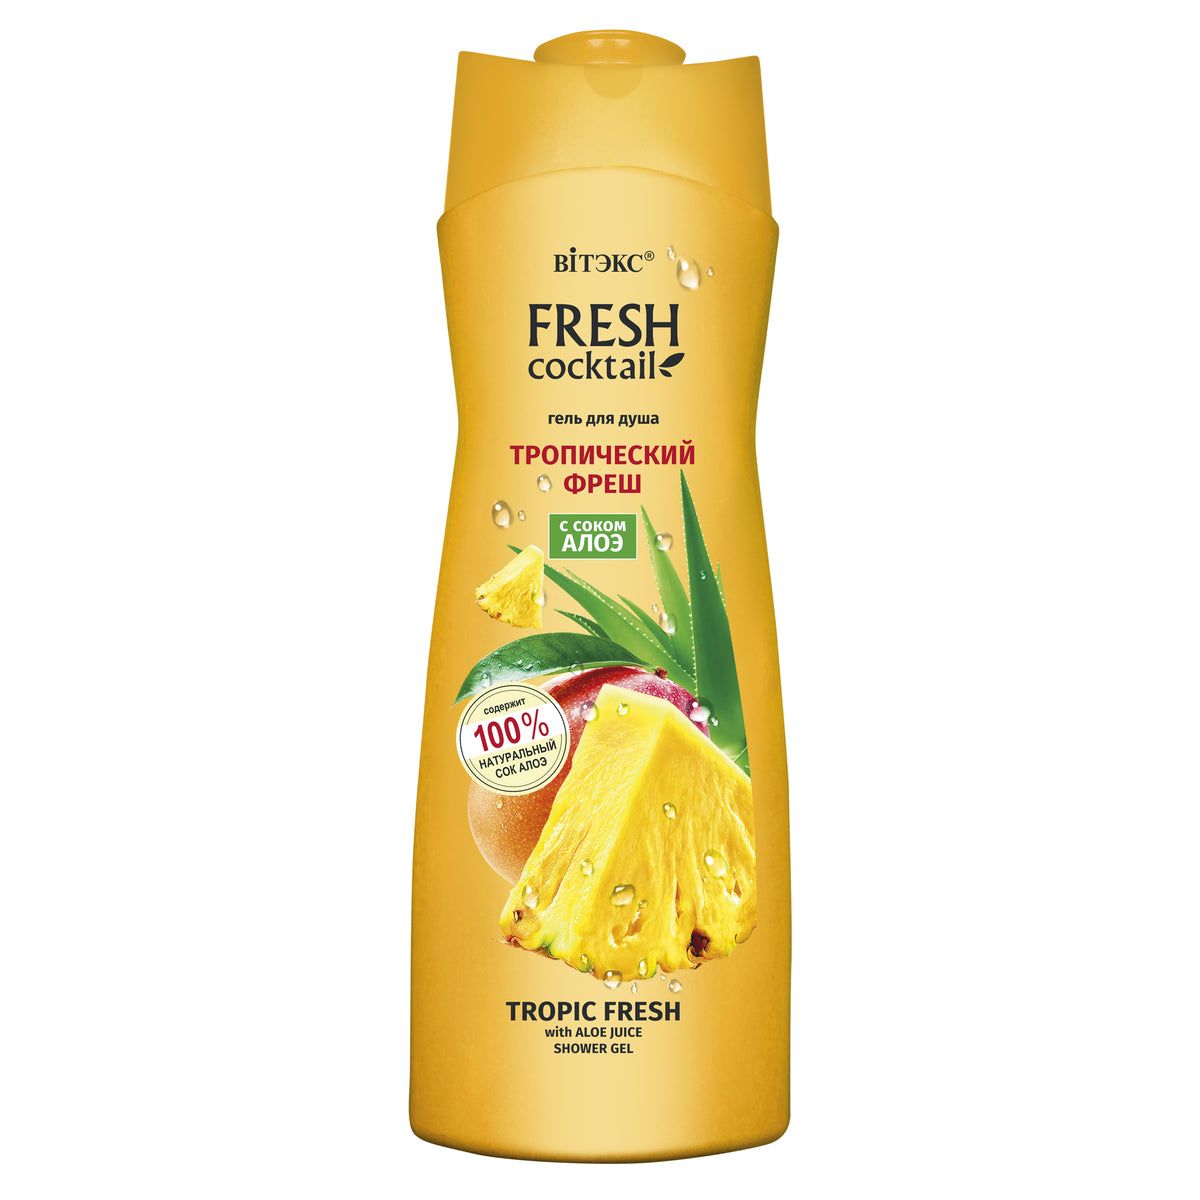 FRESH COCKTAIL - Tropik Meyve Aromalı ve Aloe Katkılı Duş Jeli ( 500 ml ) - Auraline Cosmetics